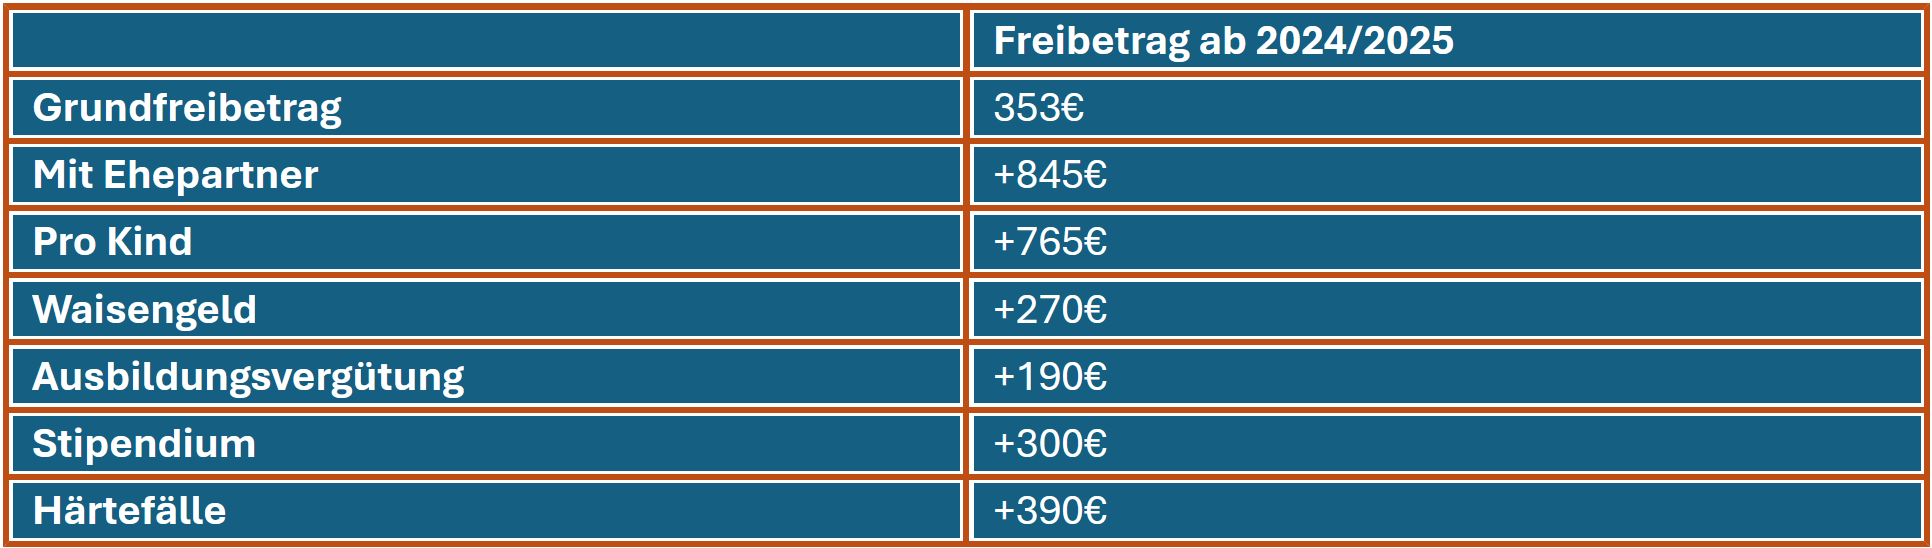 Eine Tabelle gibt Auskunft über die verschiedenen Freibetragsgrenzen beim Bafög.